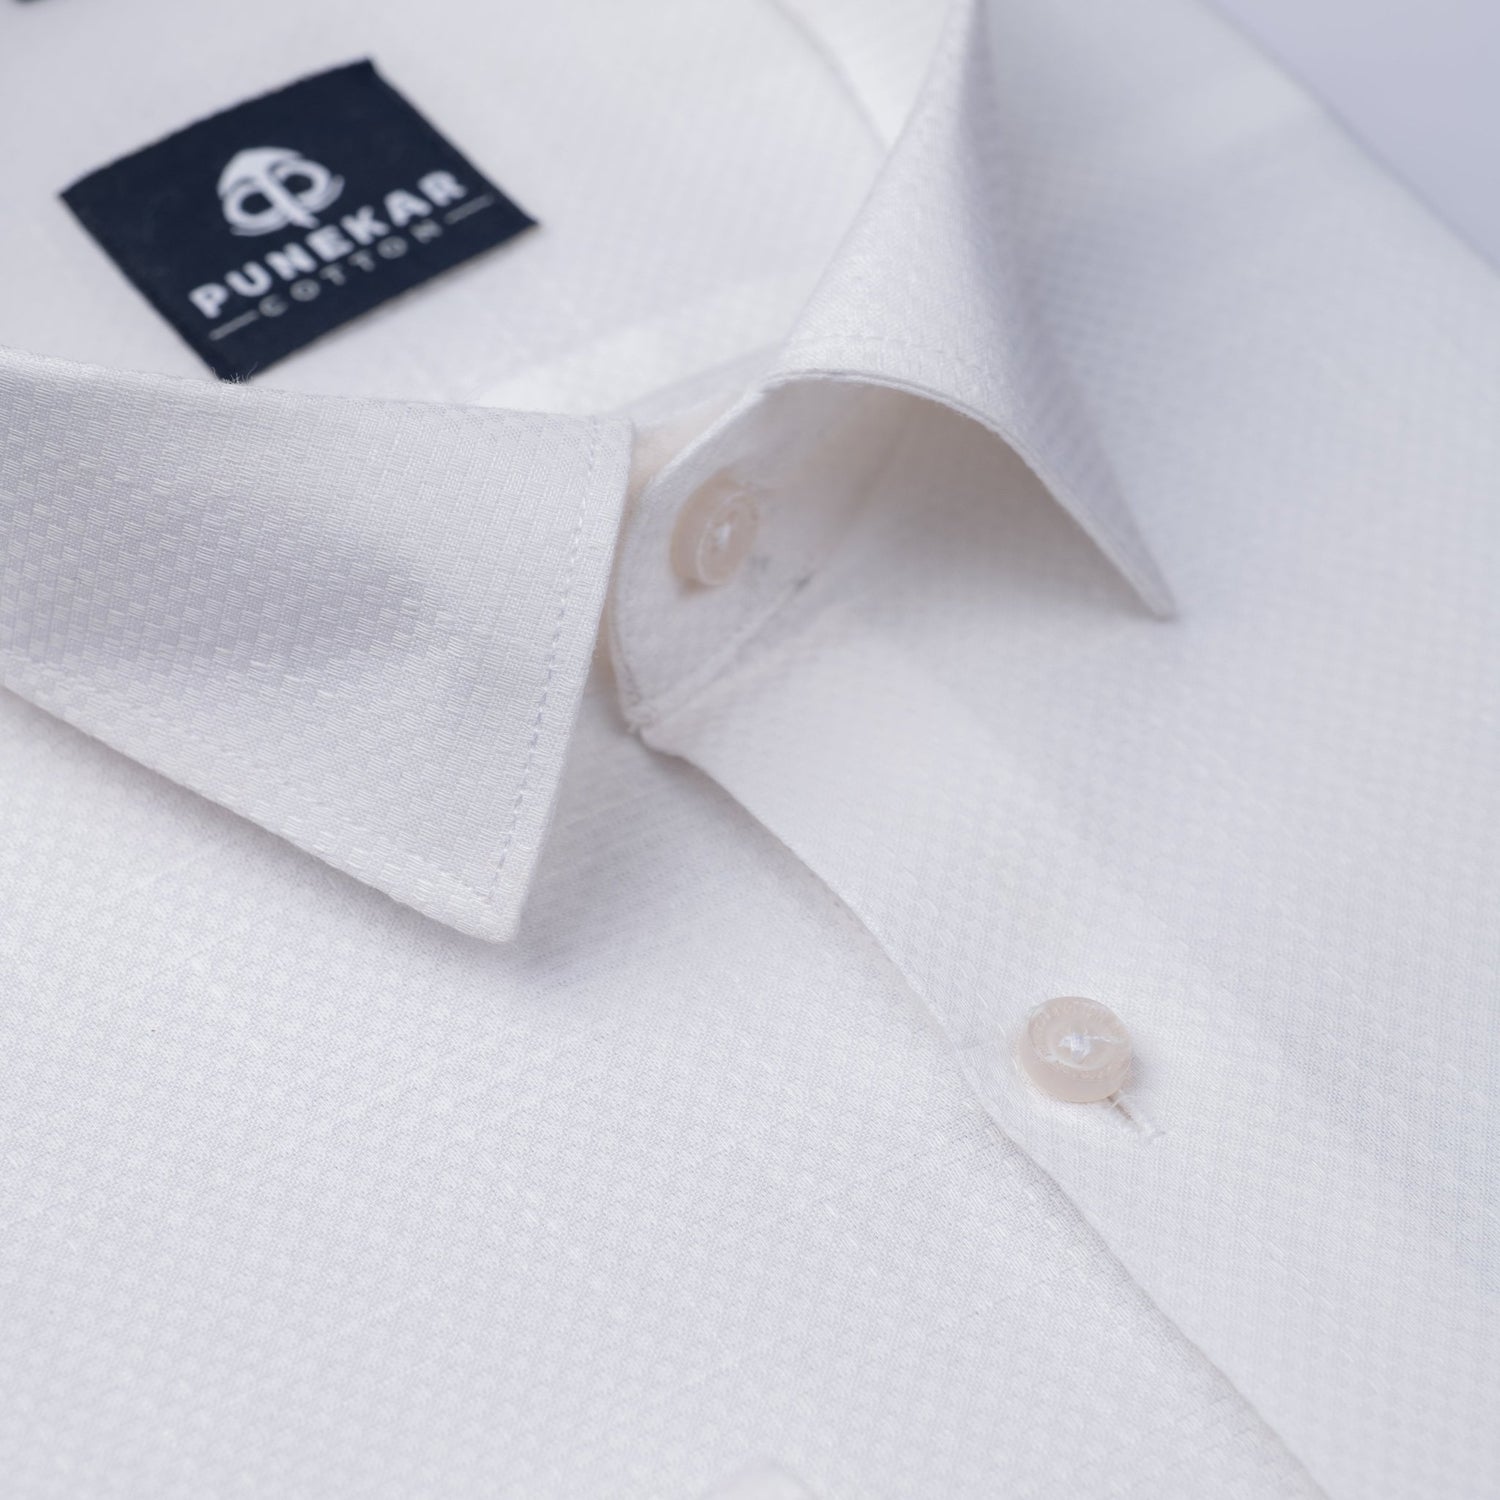 White Color Dobby Cotton Shirt For Men - Punekar Cotton